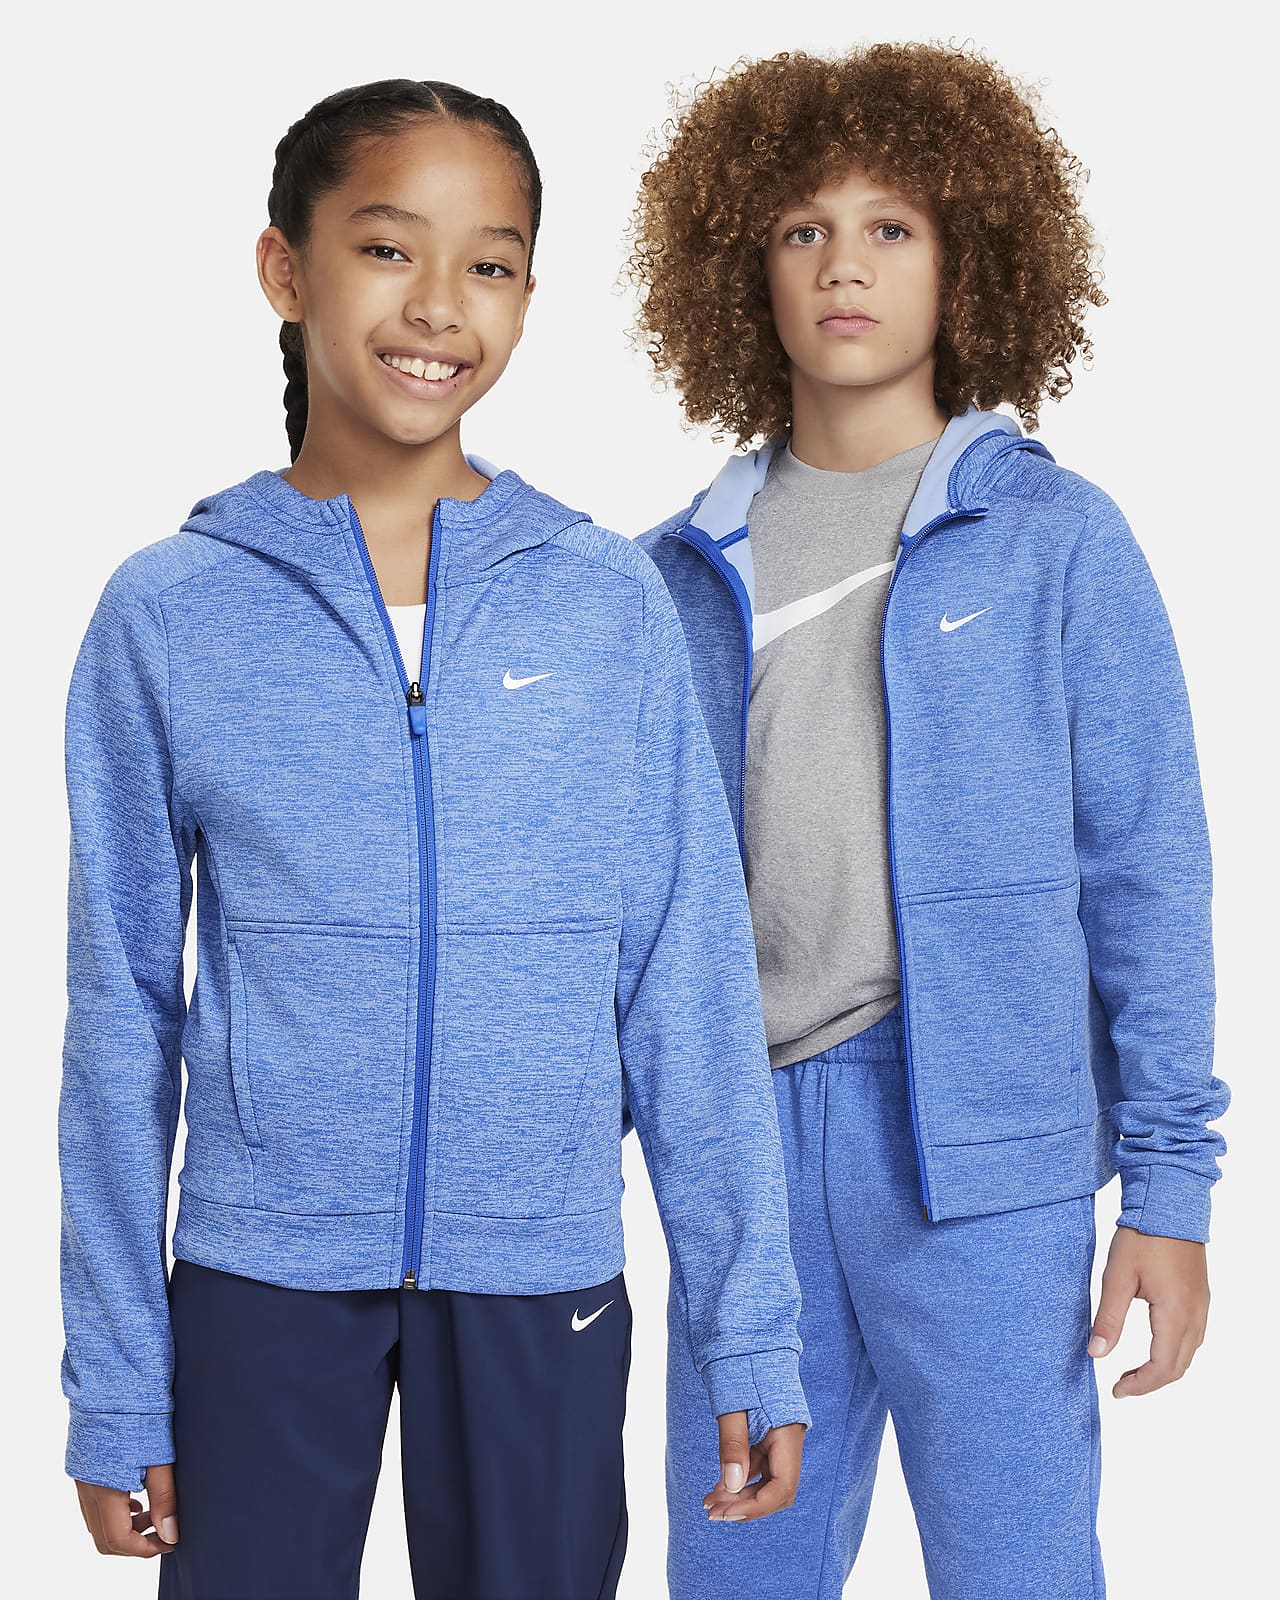 Veste Nike enfants/adolescent à capuche, unisexe taille L bleu gris doublé  noir